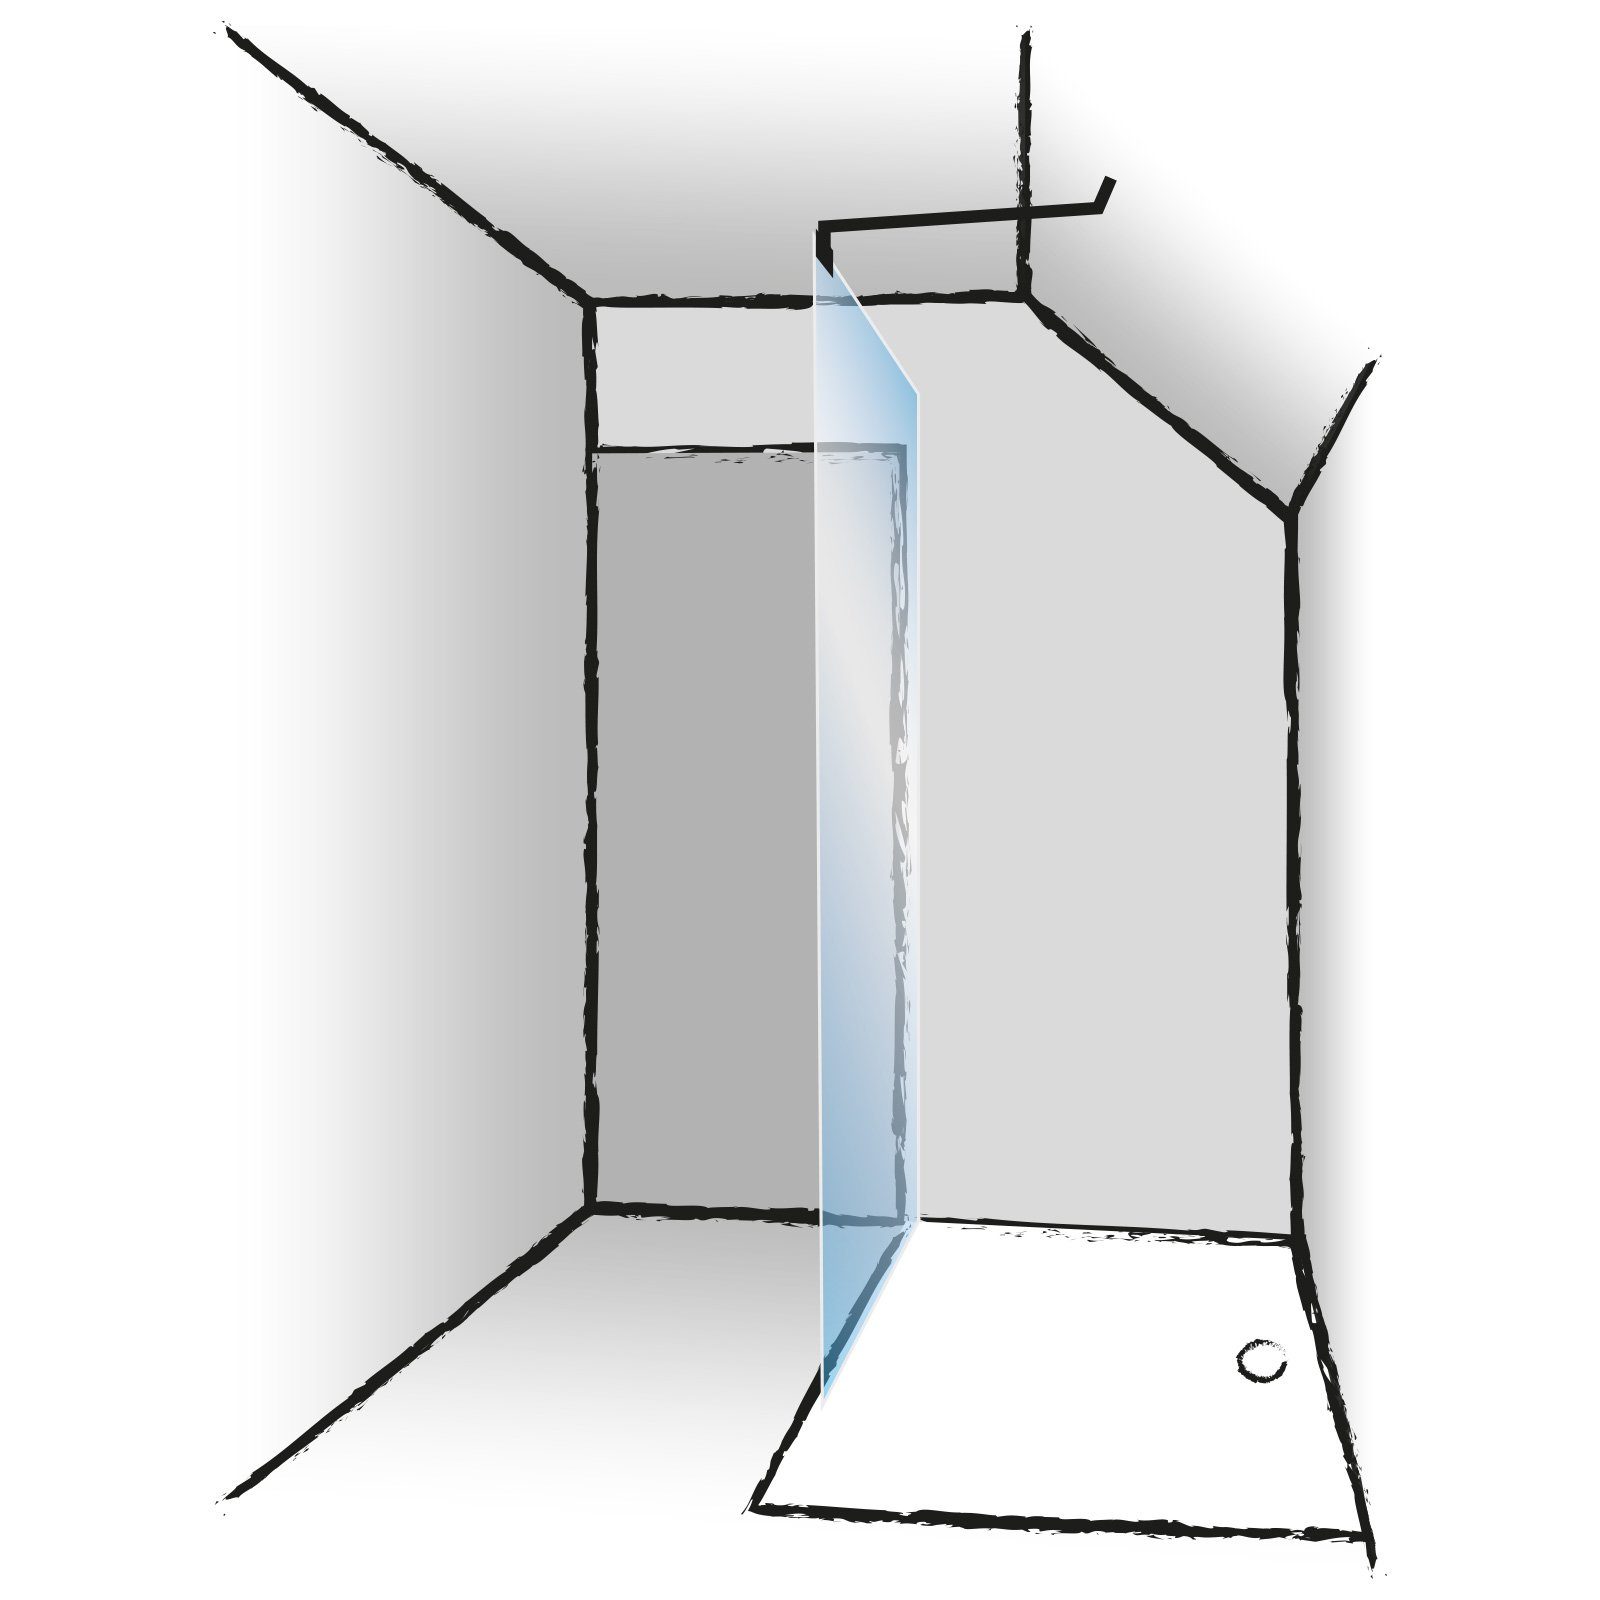 Stabilisator kürzbar für Schulte 5 Mattschwarz, - 8 Glas, Duschwand-Stabilisationsstange mm